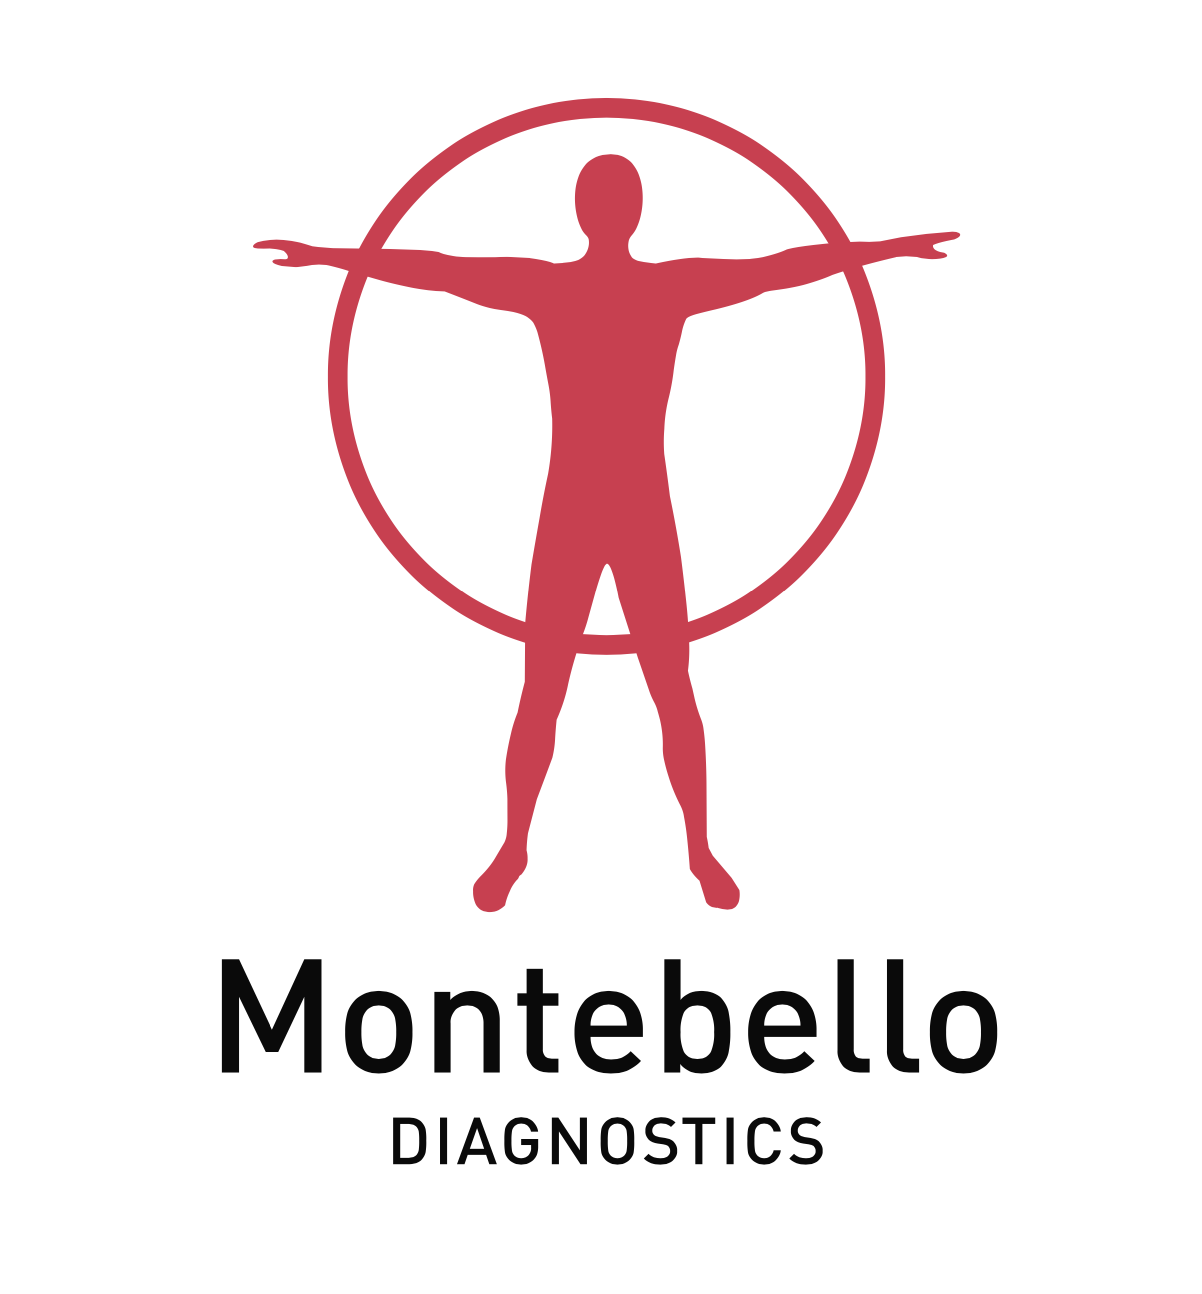 Montebello Diagnostics